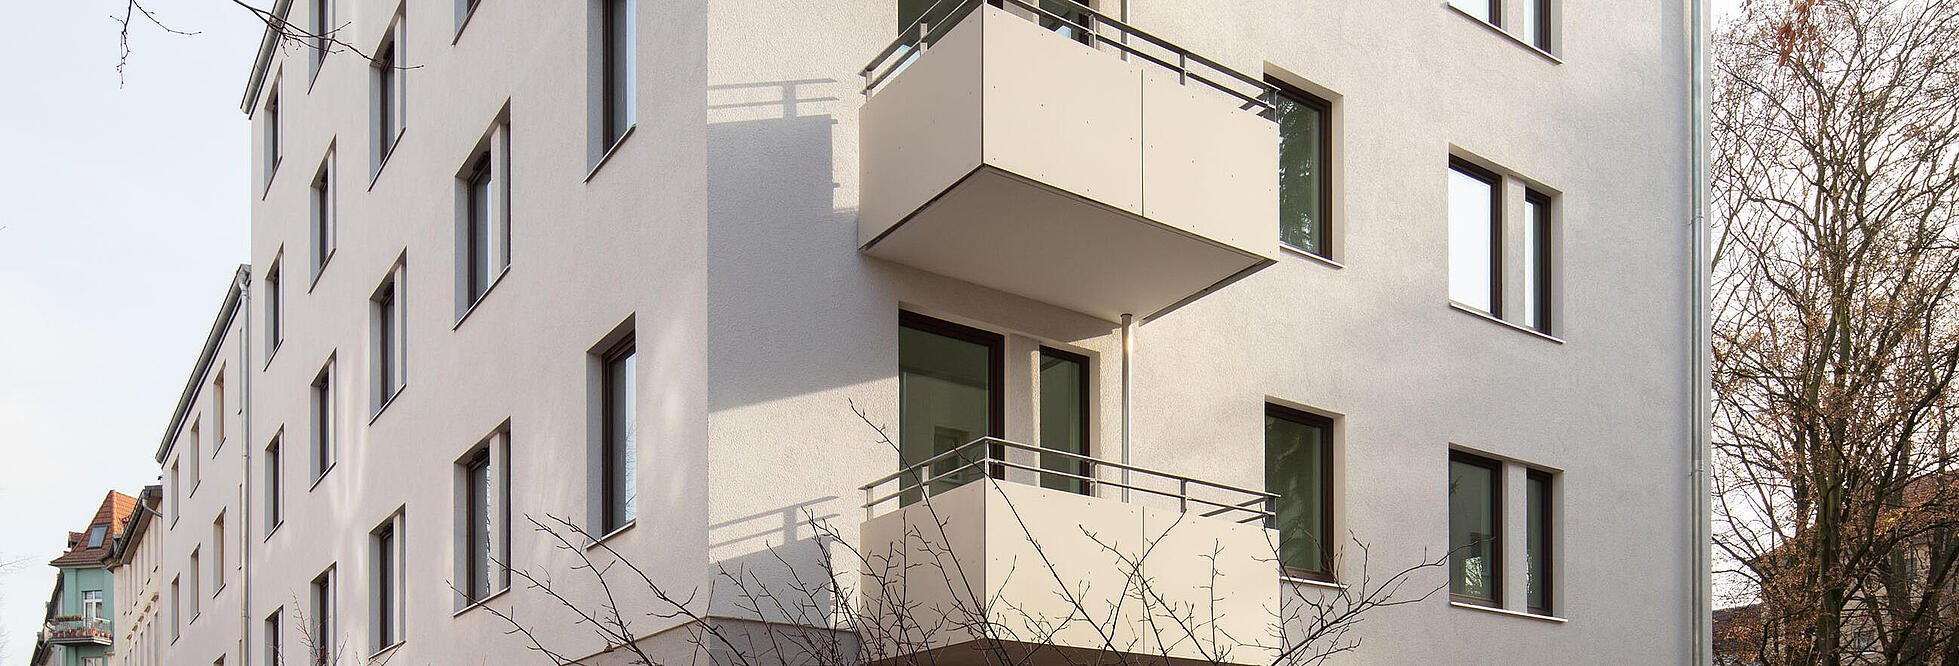 Seitenansicht Mehrfamilienhaus mit Balkon